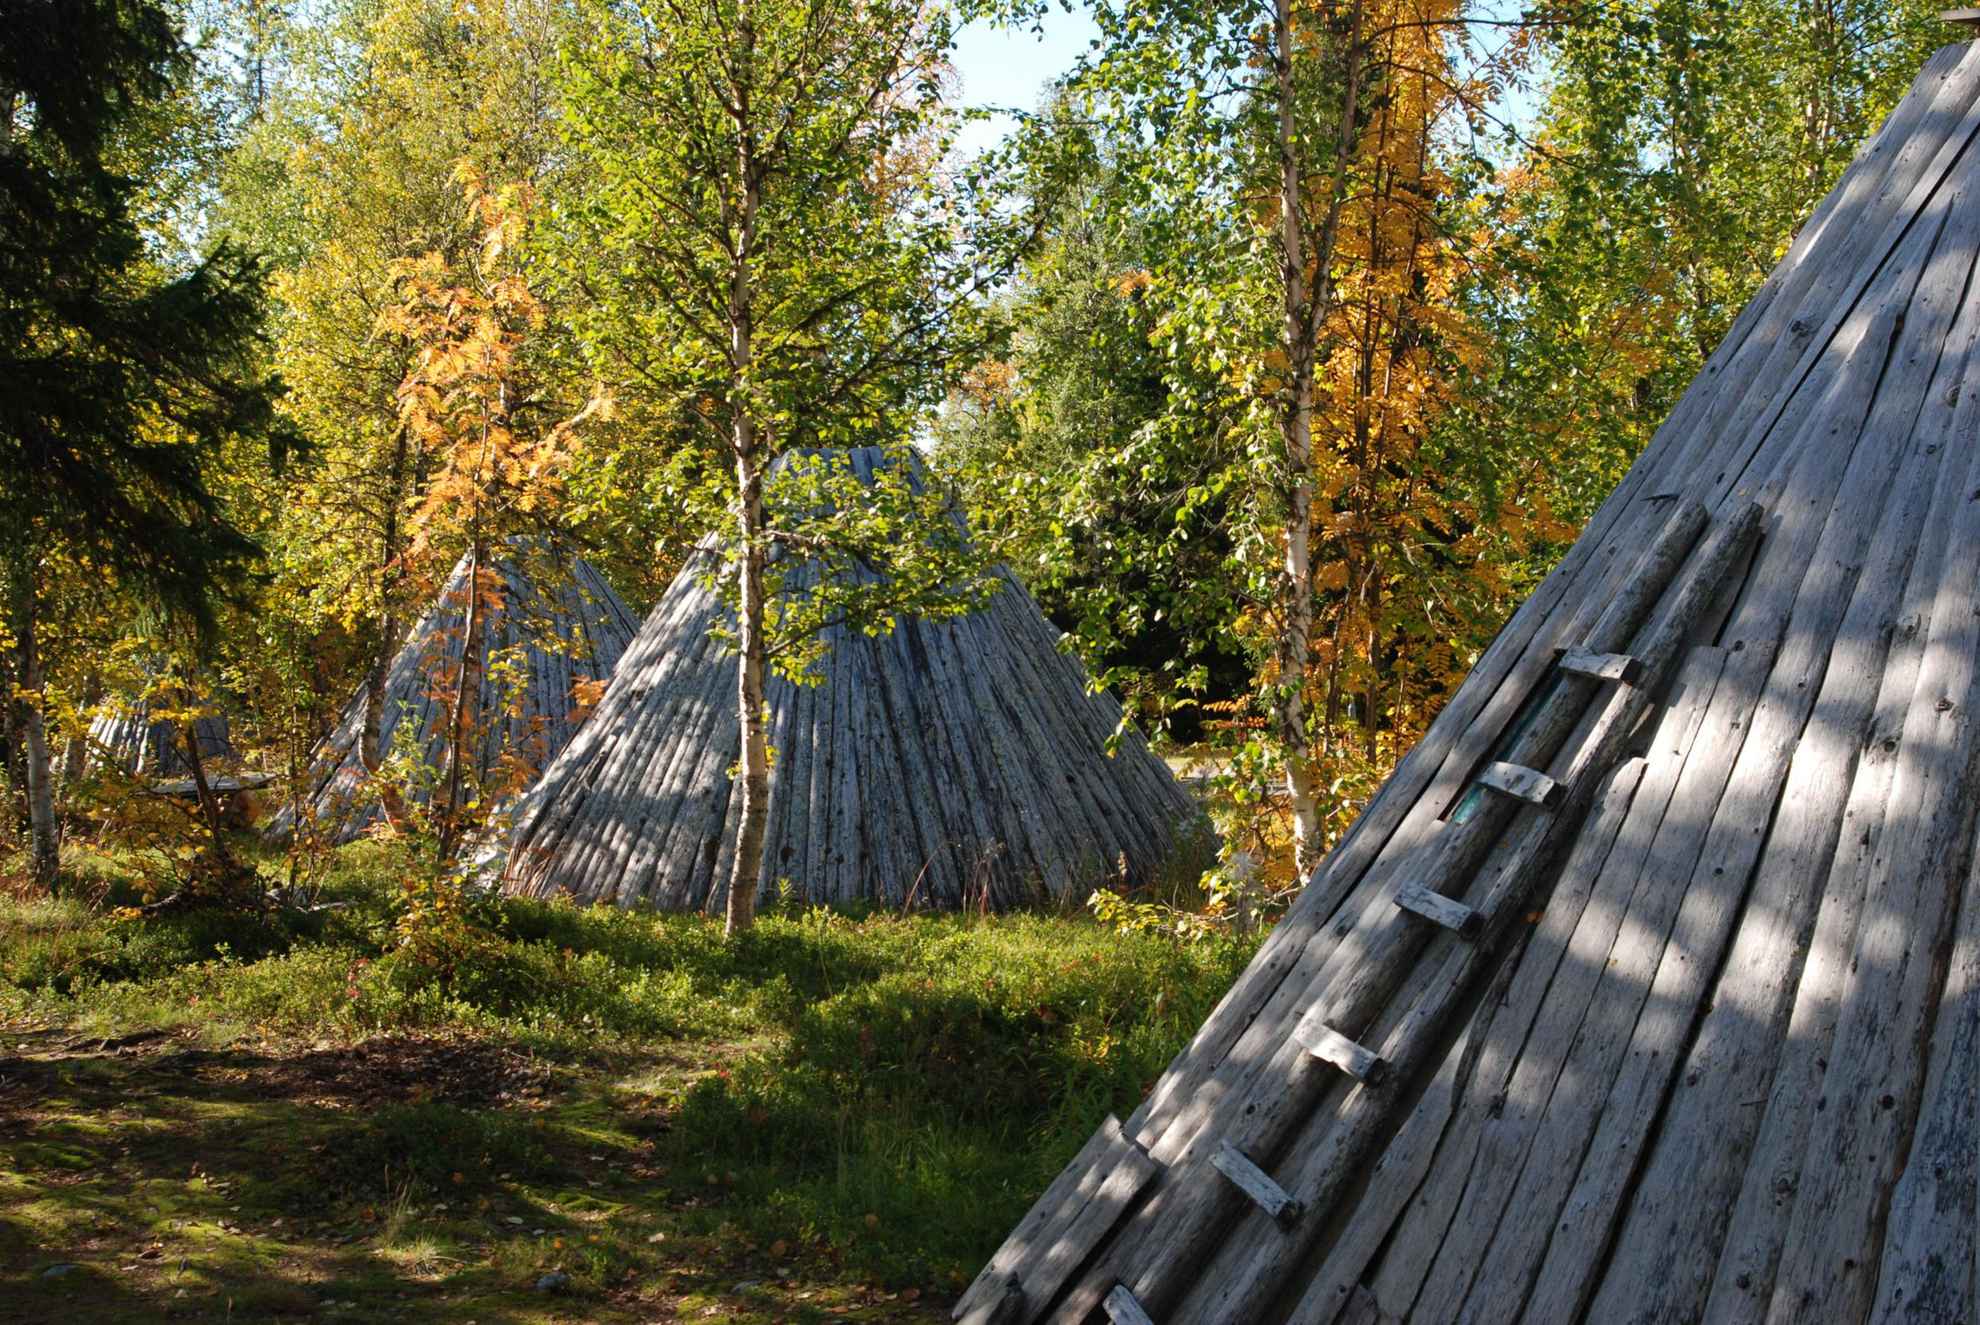 Trois huttes en bois entourées d'arbres aux nuances automnales.